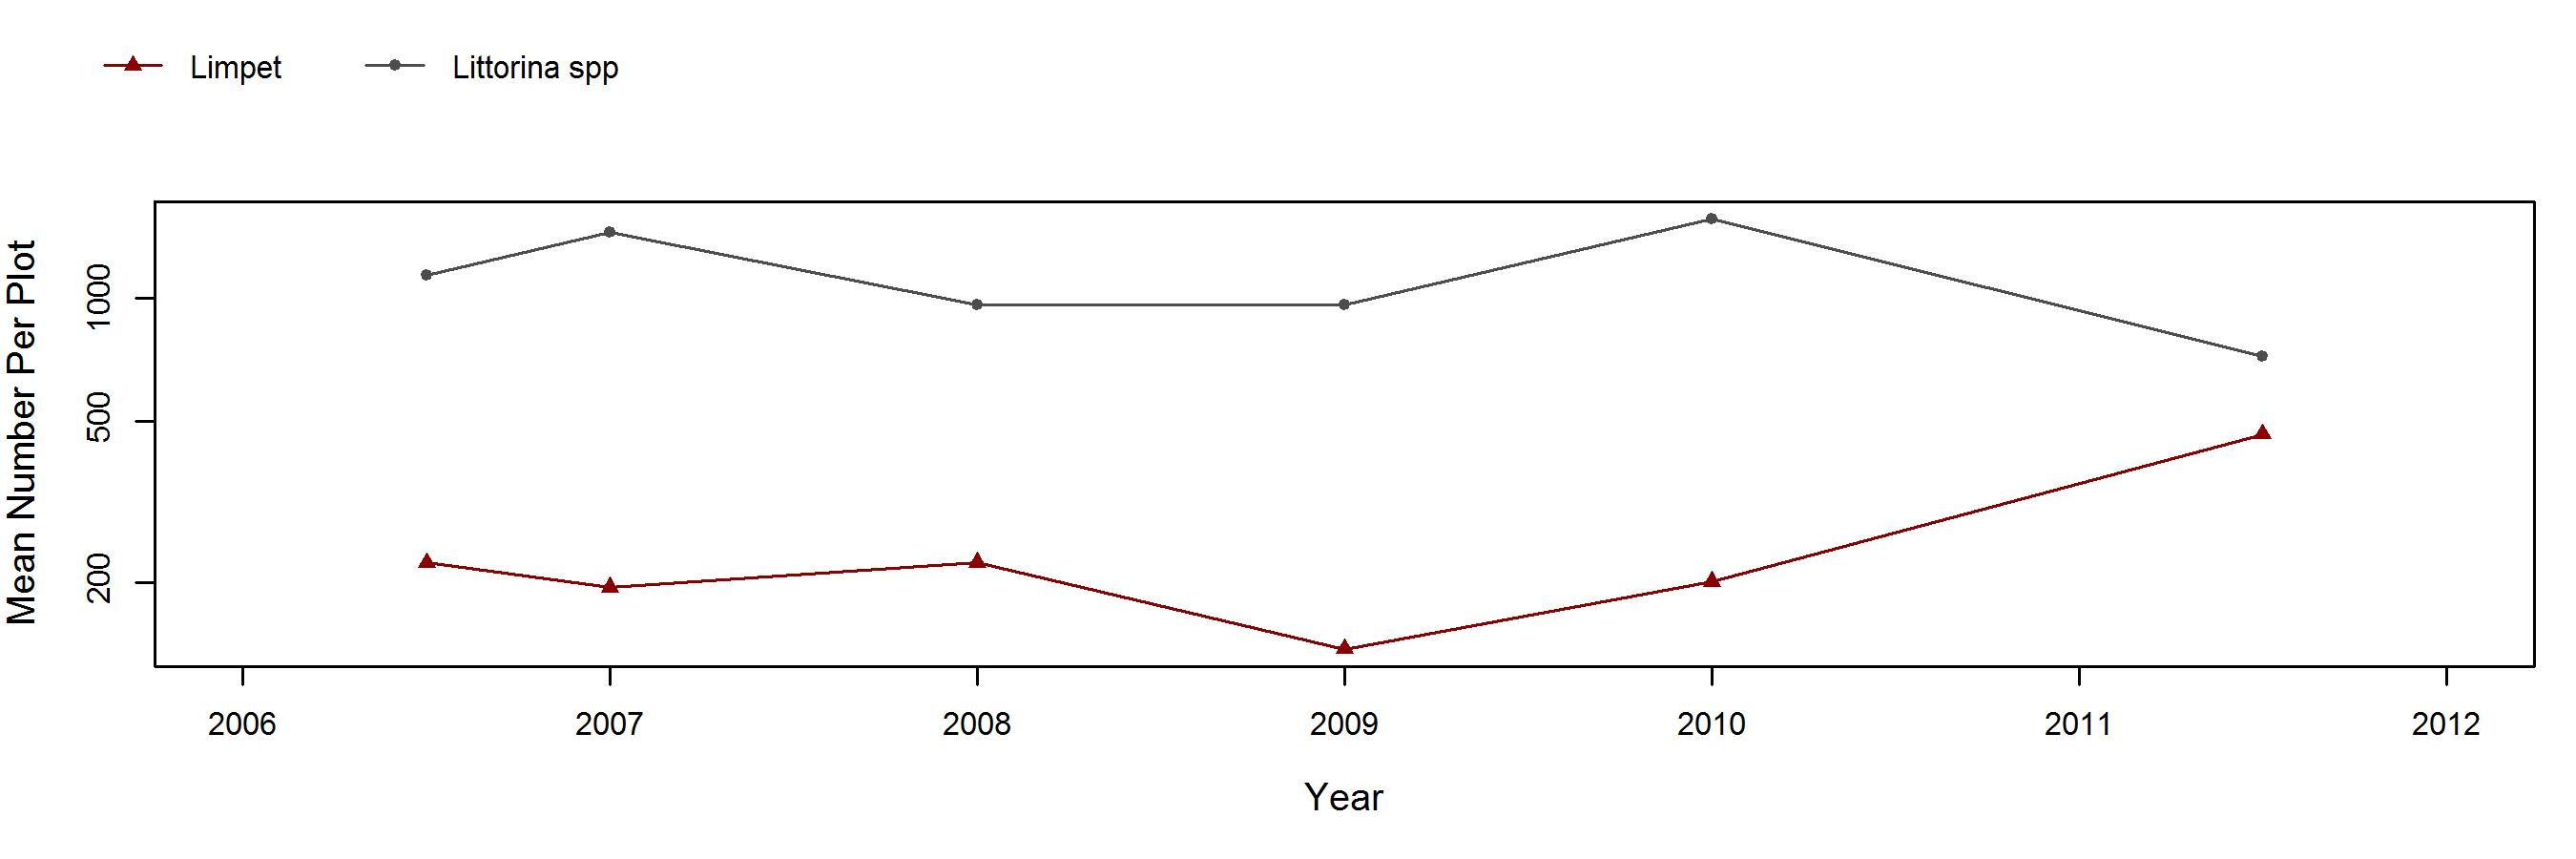 Trailer barnacle trend plot